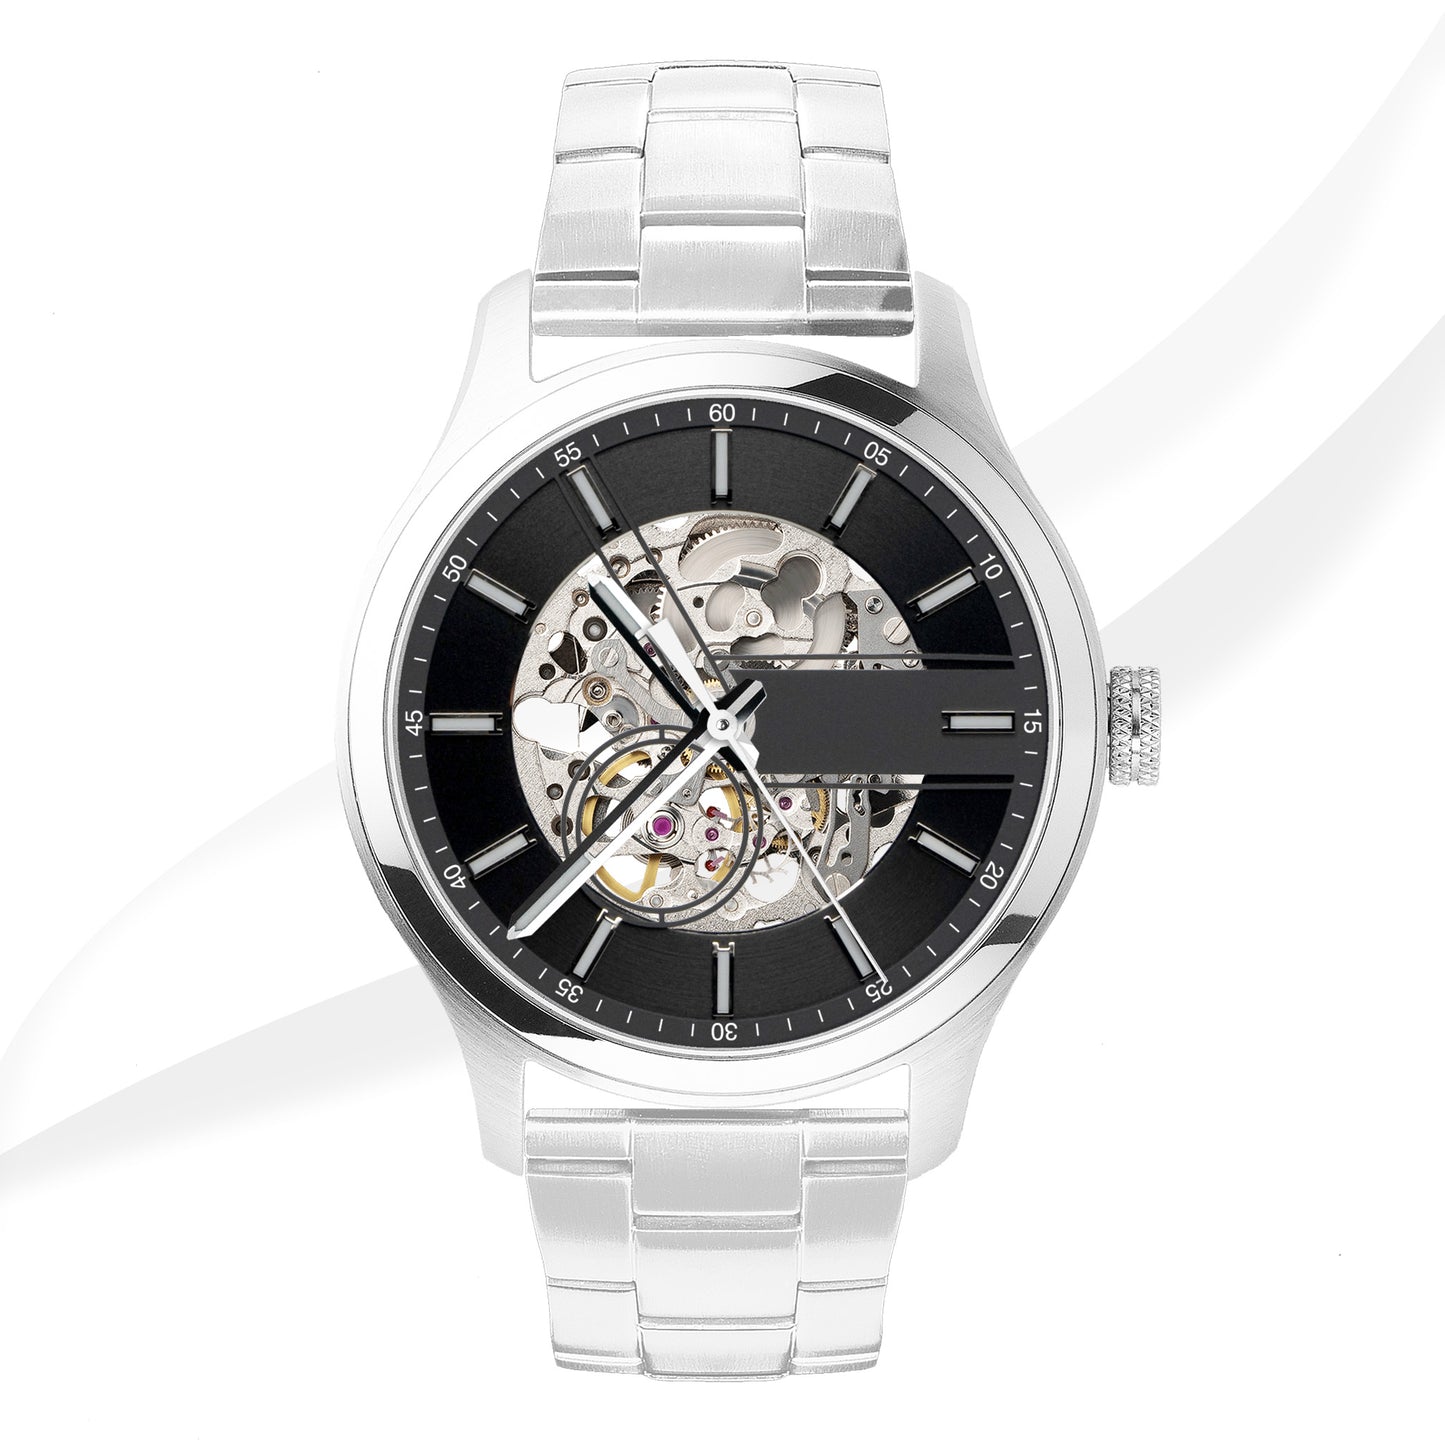 EONIQ custom watch - navigator s